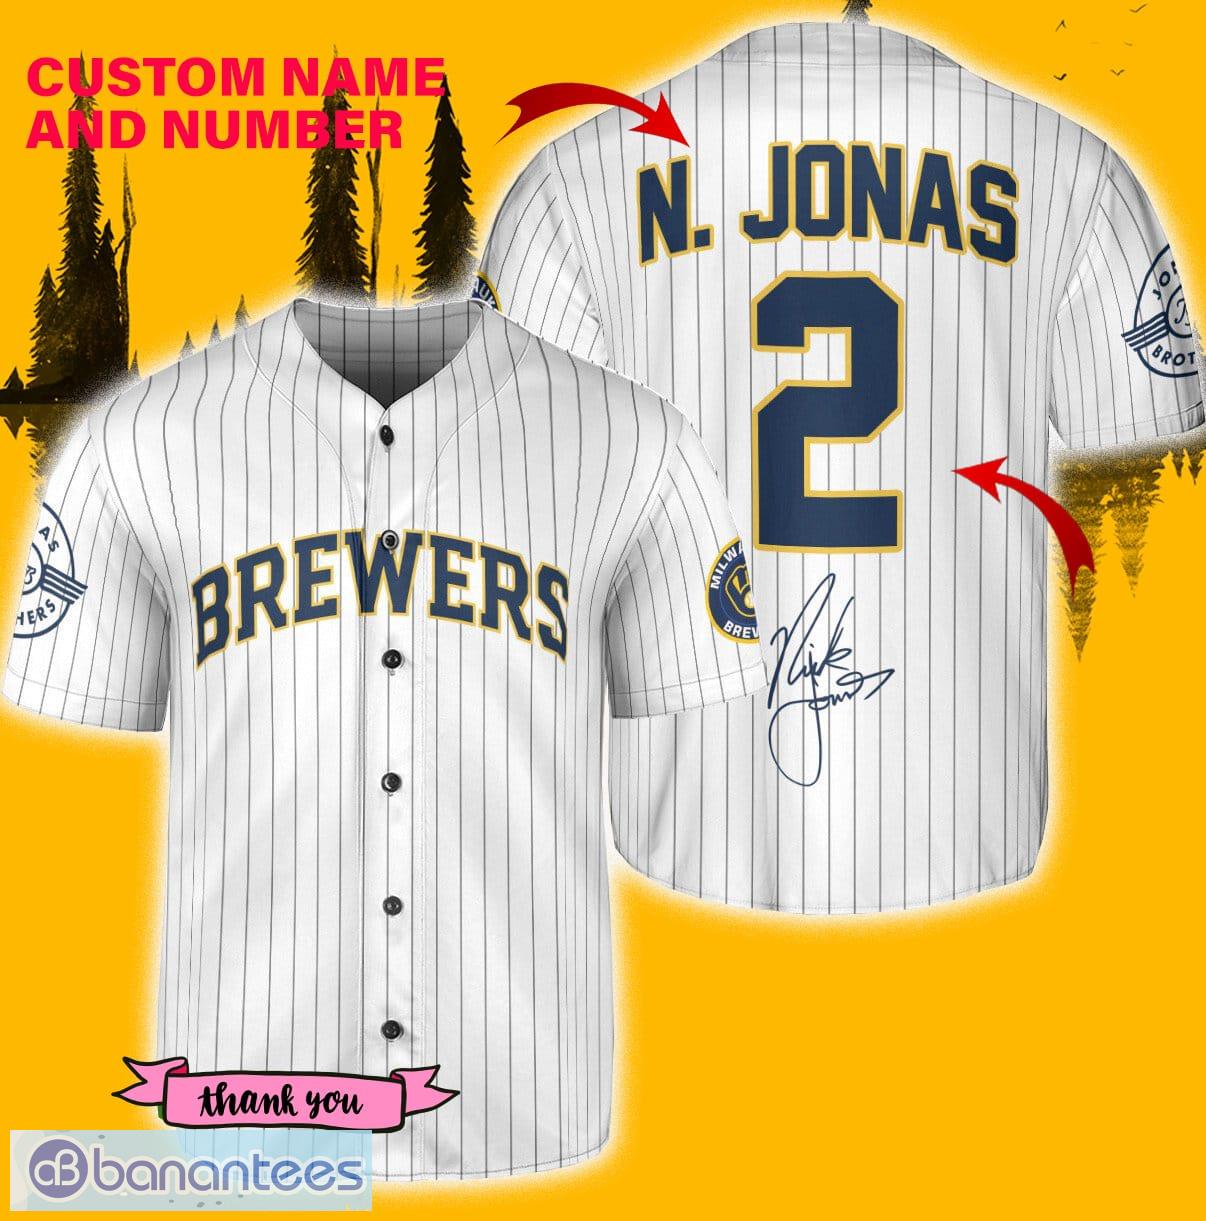 Milwaukee Brewers N. Jonas Baseball Jersey Shirt White Custom